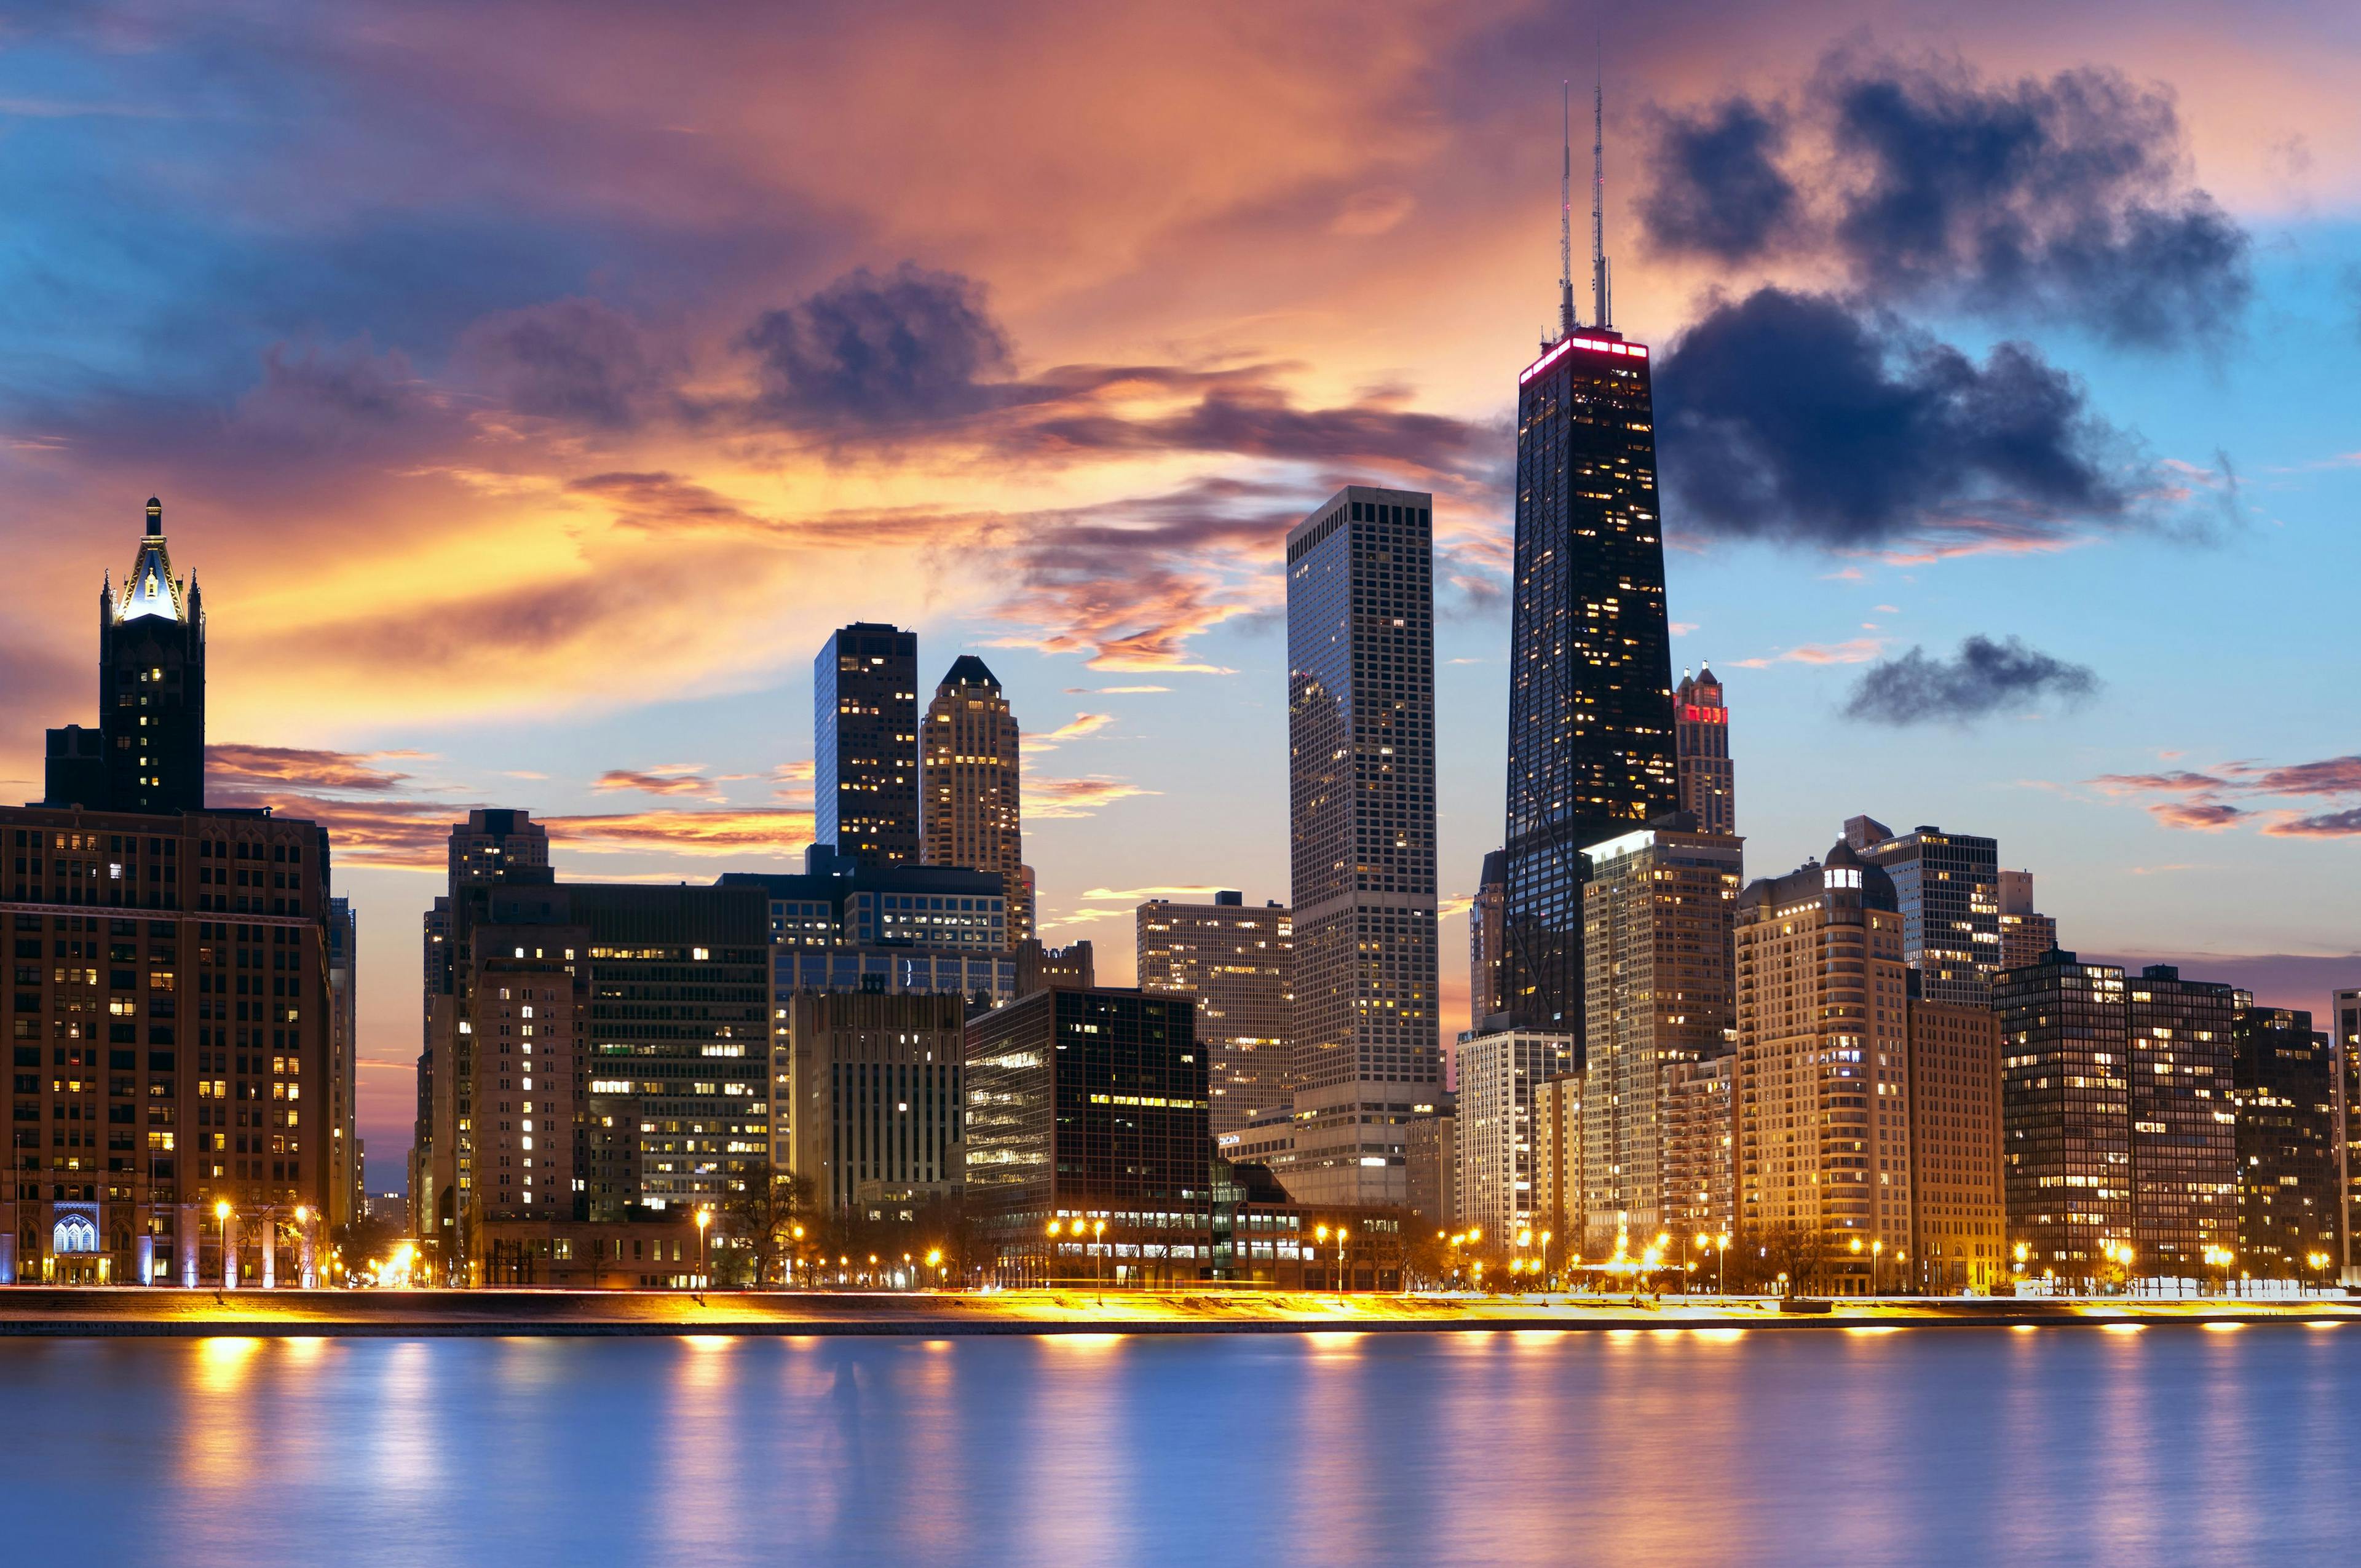 Chicago Skyline | Image Credit: © rudi1976 - stock.adobe.com